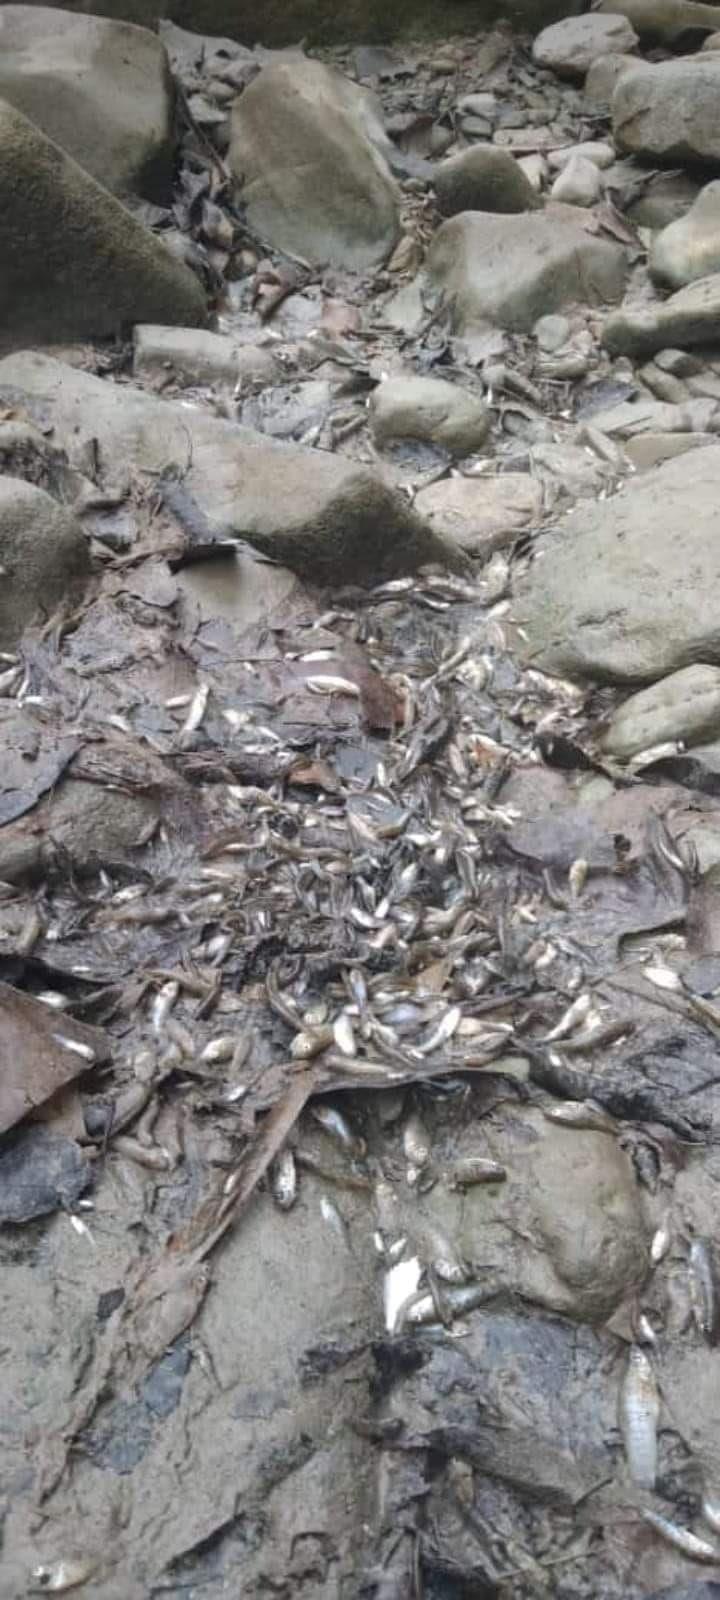 Mortandad de peces